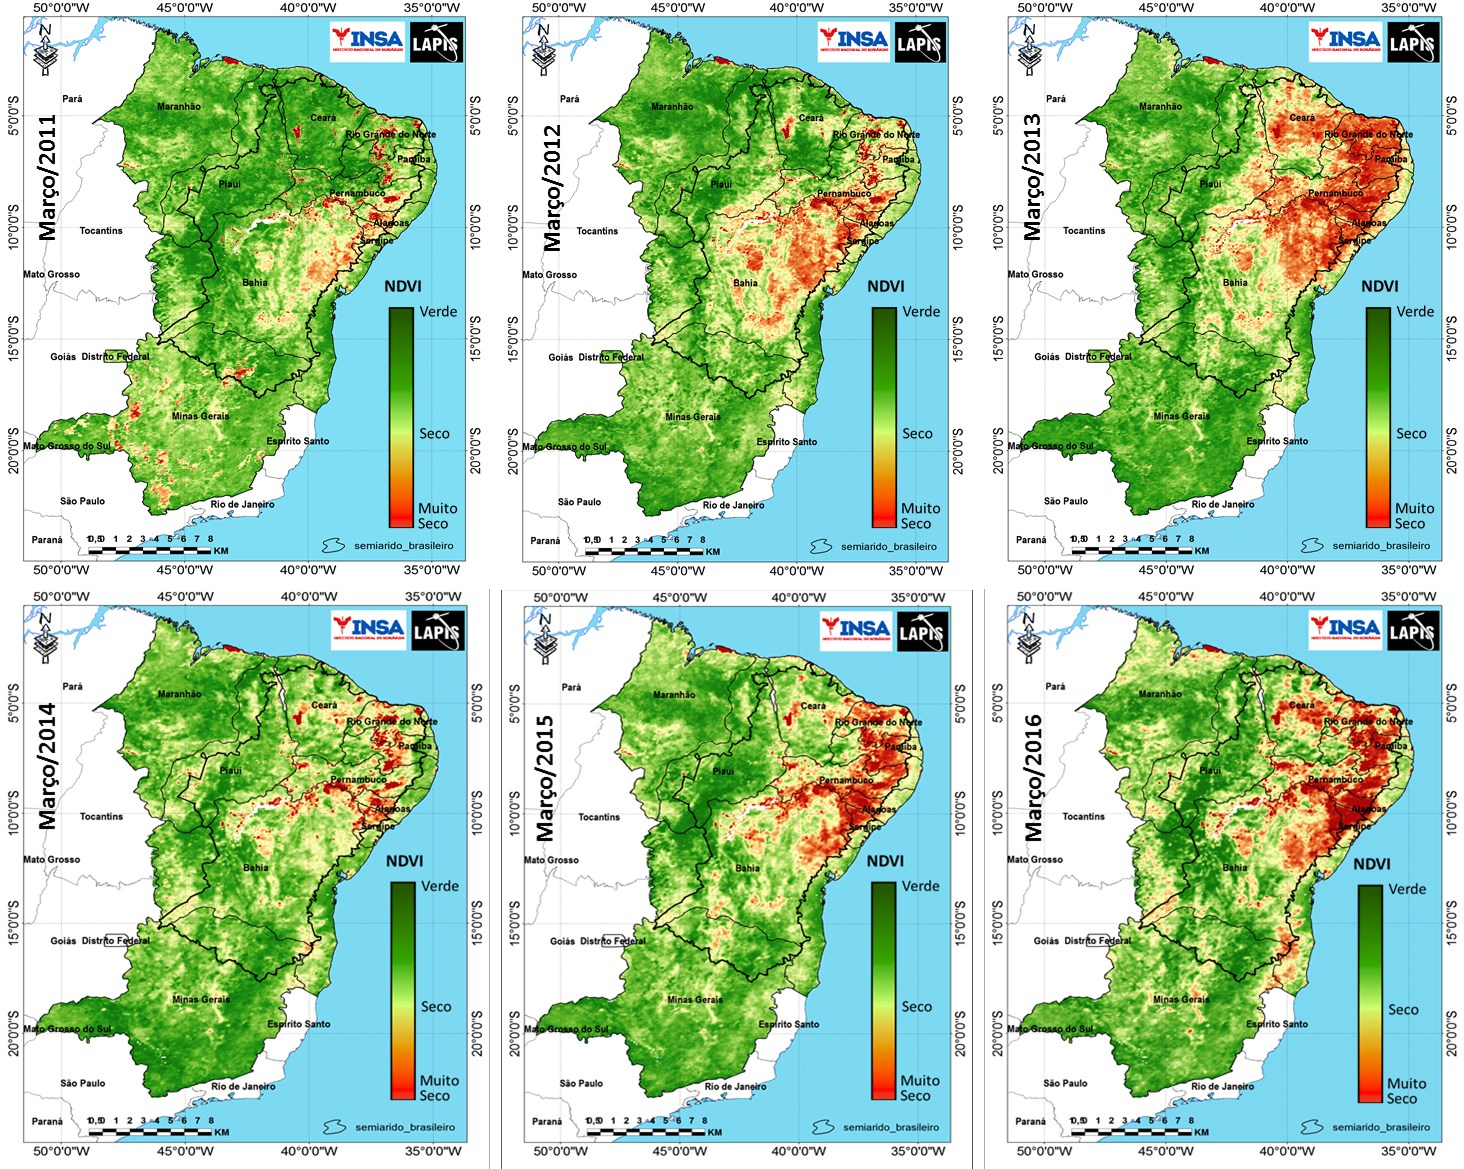 Mapas da cobertura vegetal mostram seca histórica no Nordeste brasileiro_QGIS